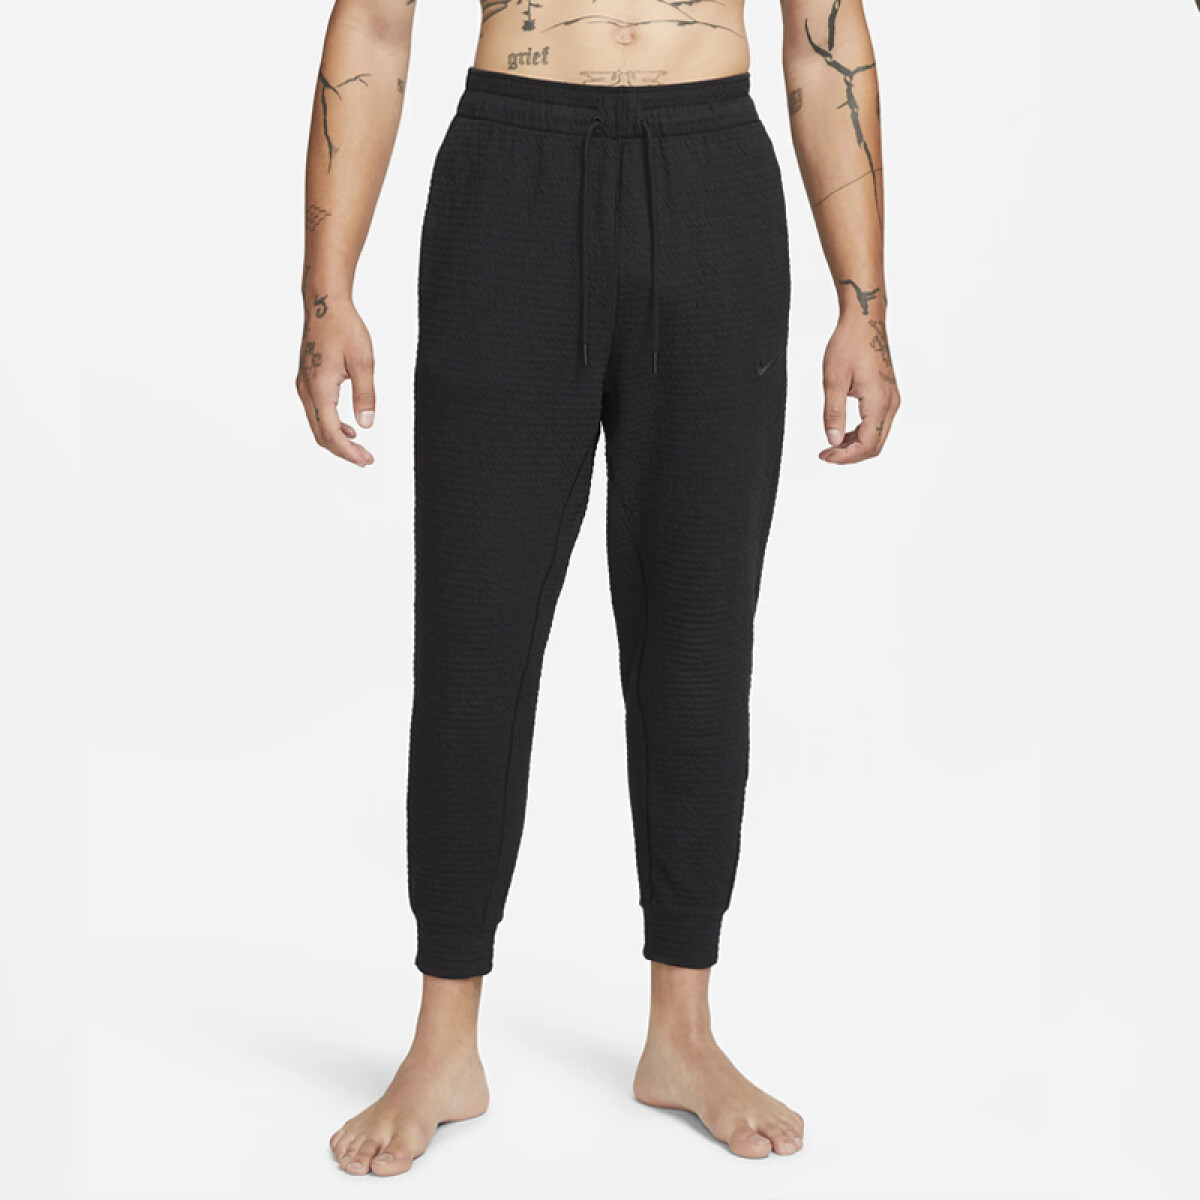 Pantalon Nike Yoga Dri-fit Texture 